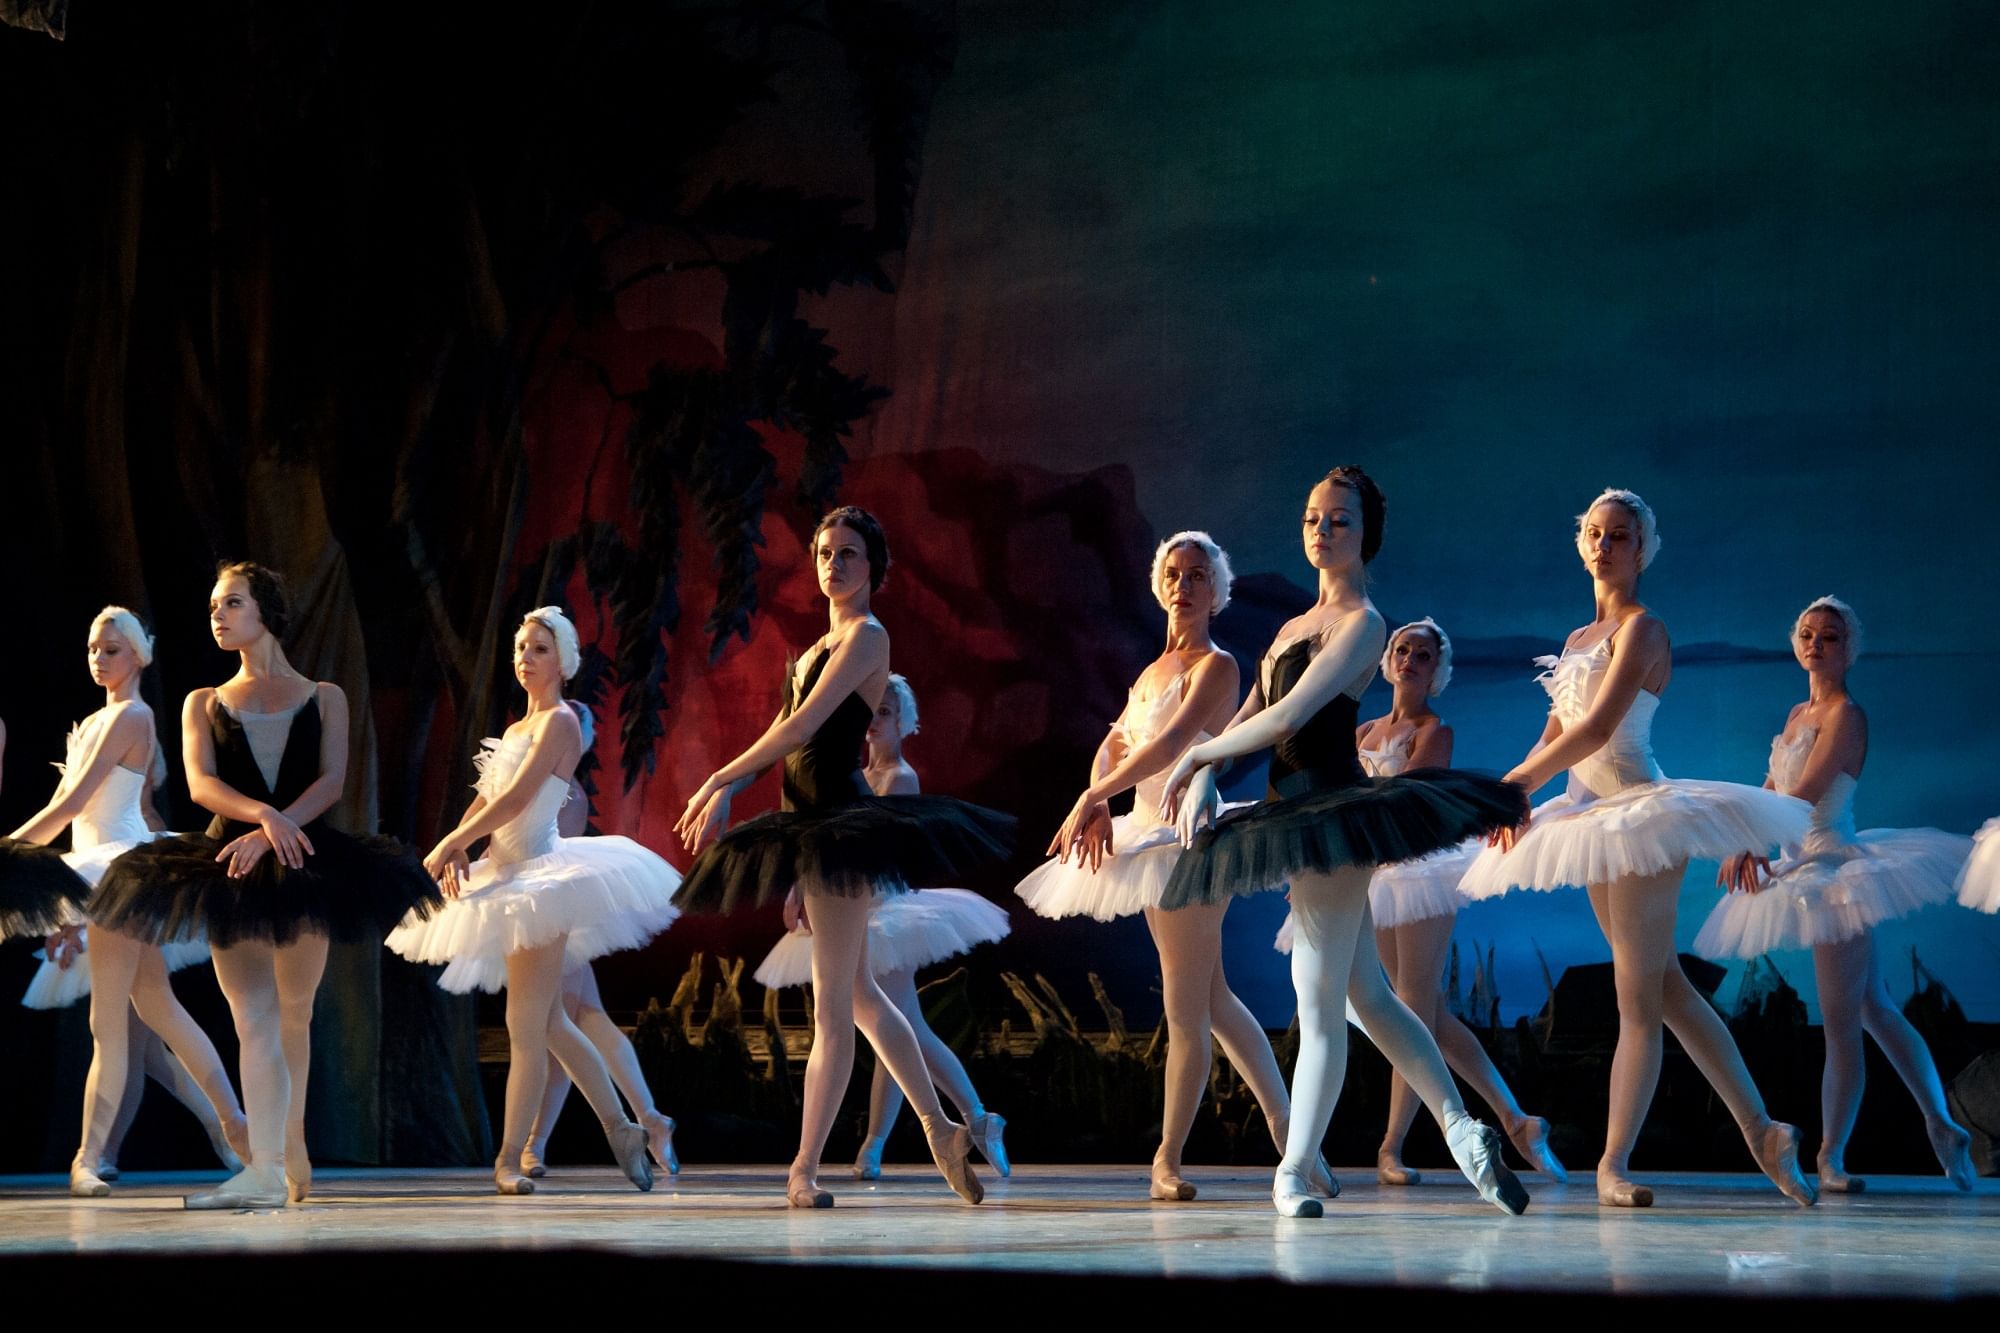 театр оперы и балета лебединое озеро